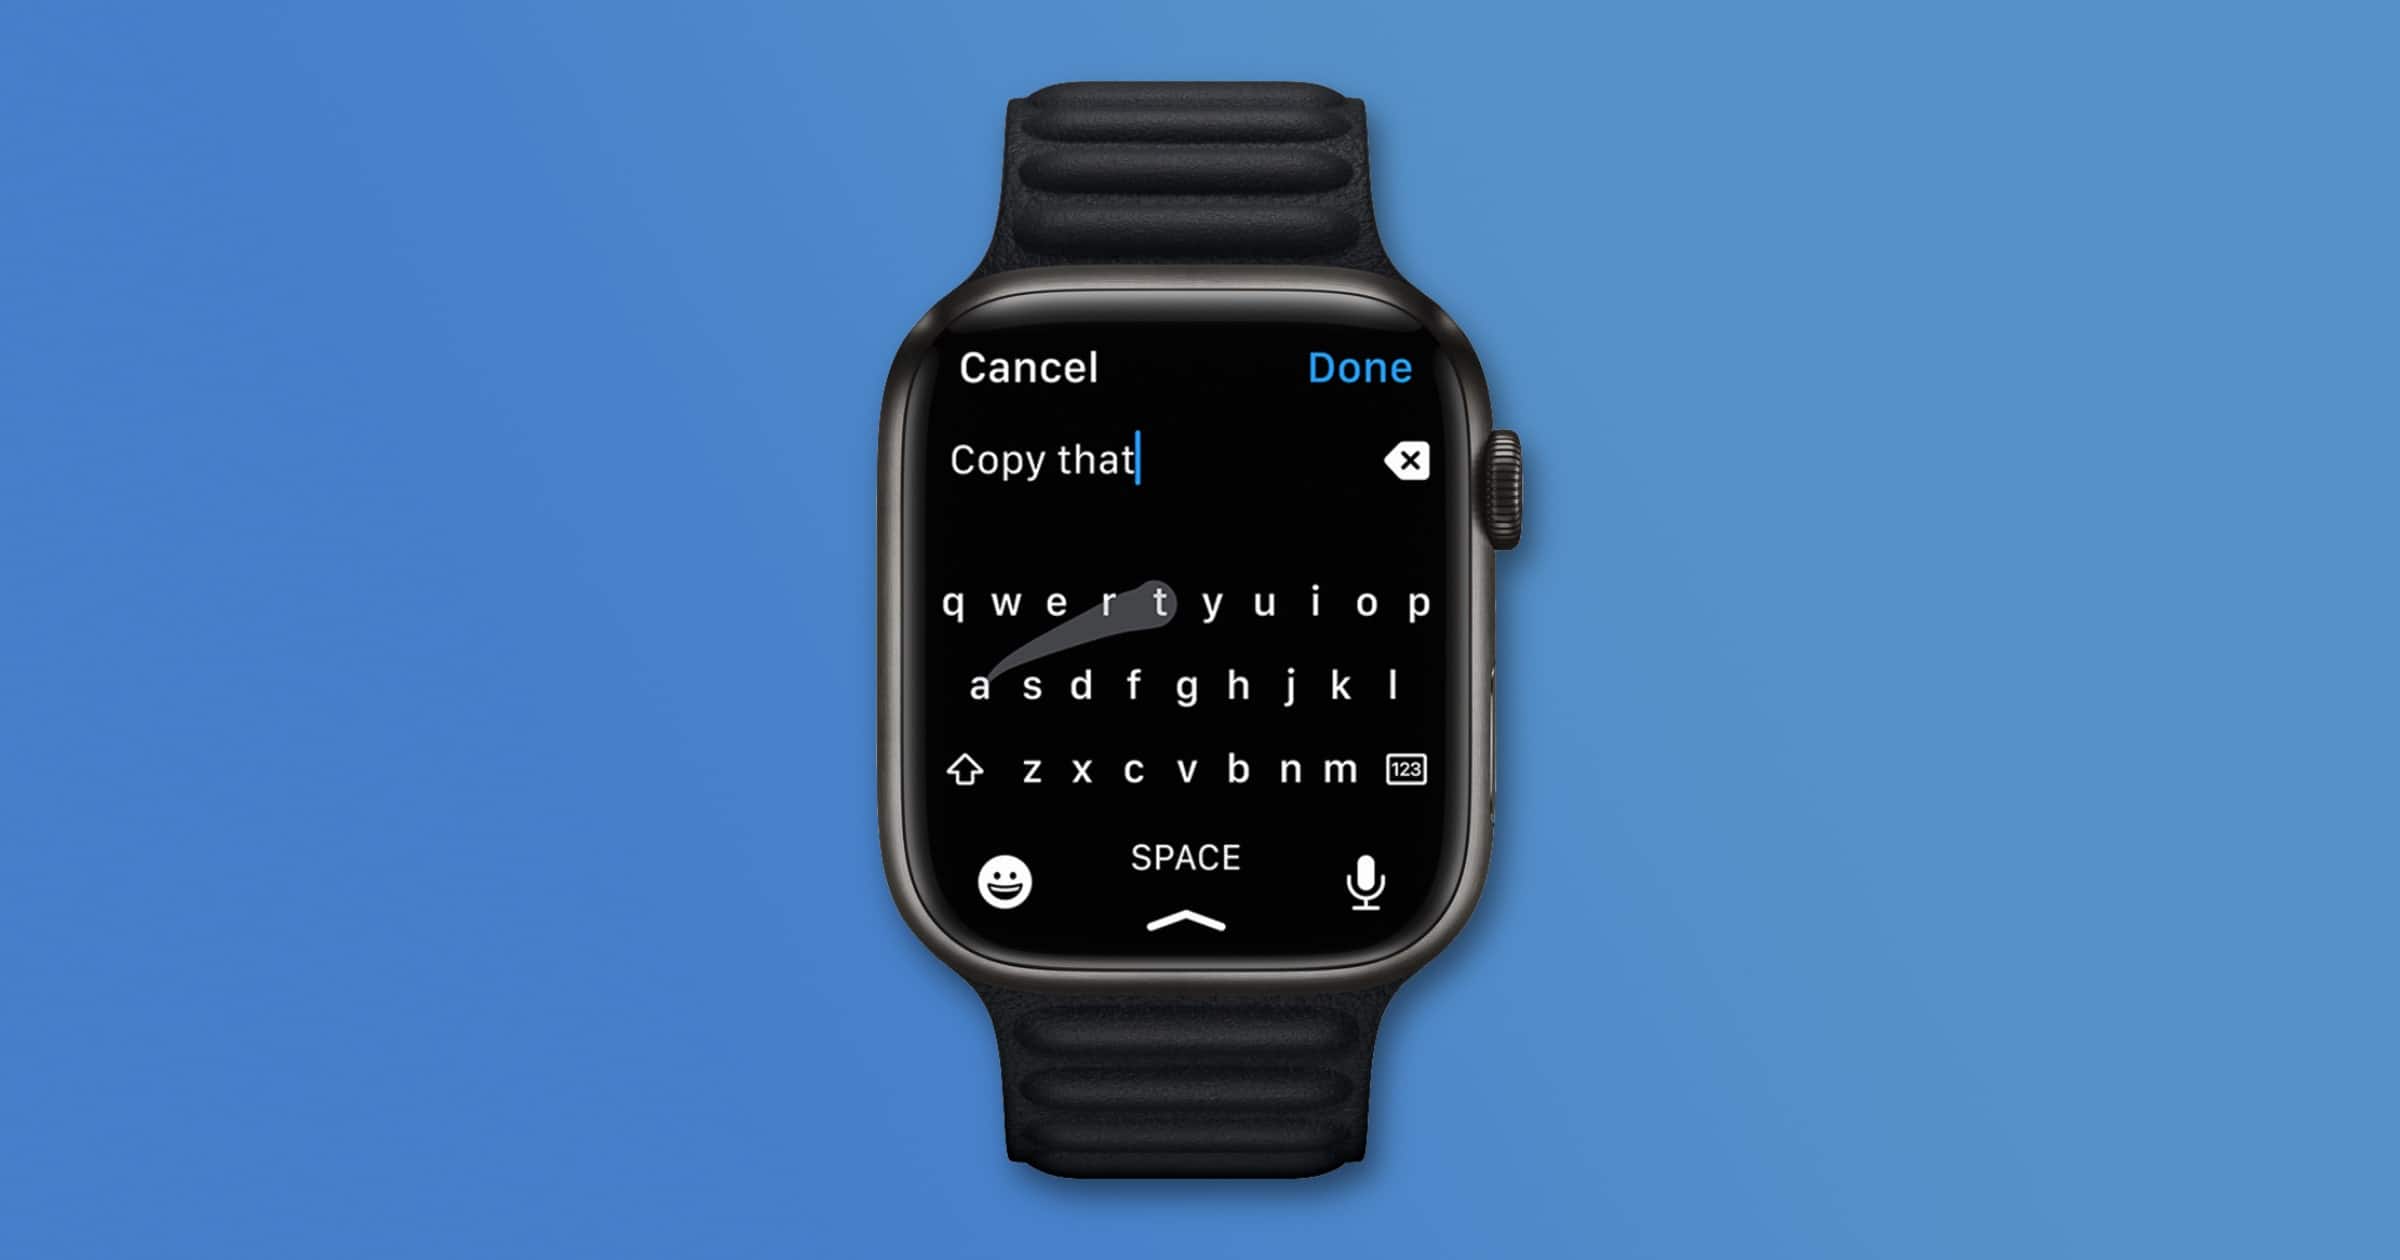 Developer of ‘FlickType’ Sues Apple Over Apple Watch Keyboards